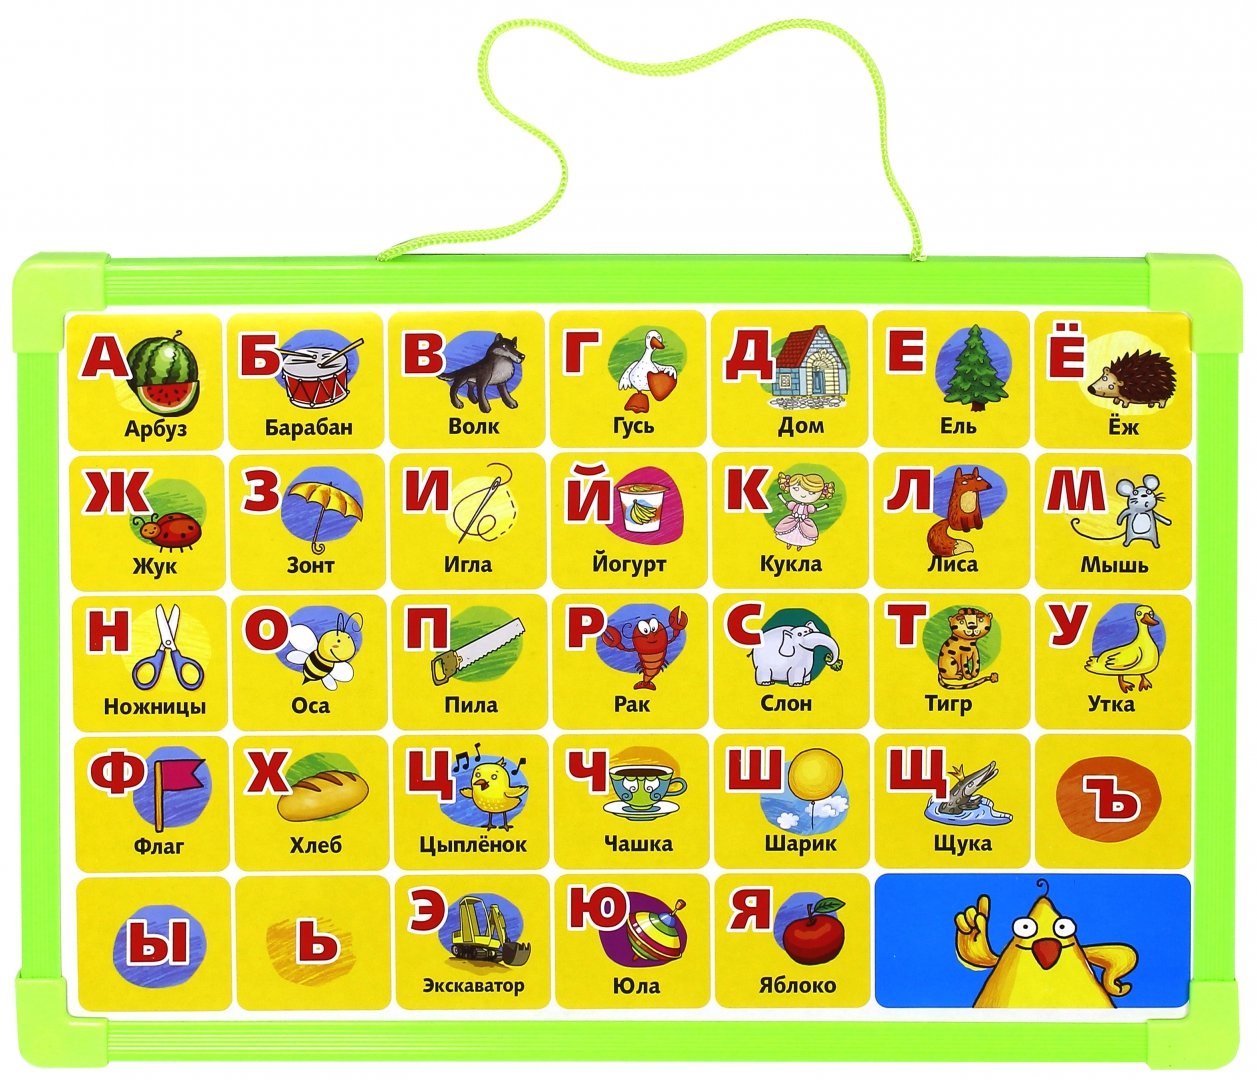 Иллюстрация 1 из 4 для Доска-алфавит двусторонняя, с маркером. Зеленая (62767) | Лабиринт - игрушки. Источник: Лабиринт